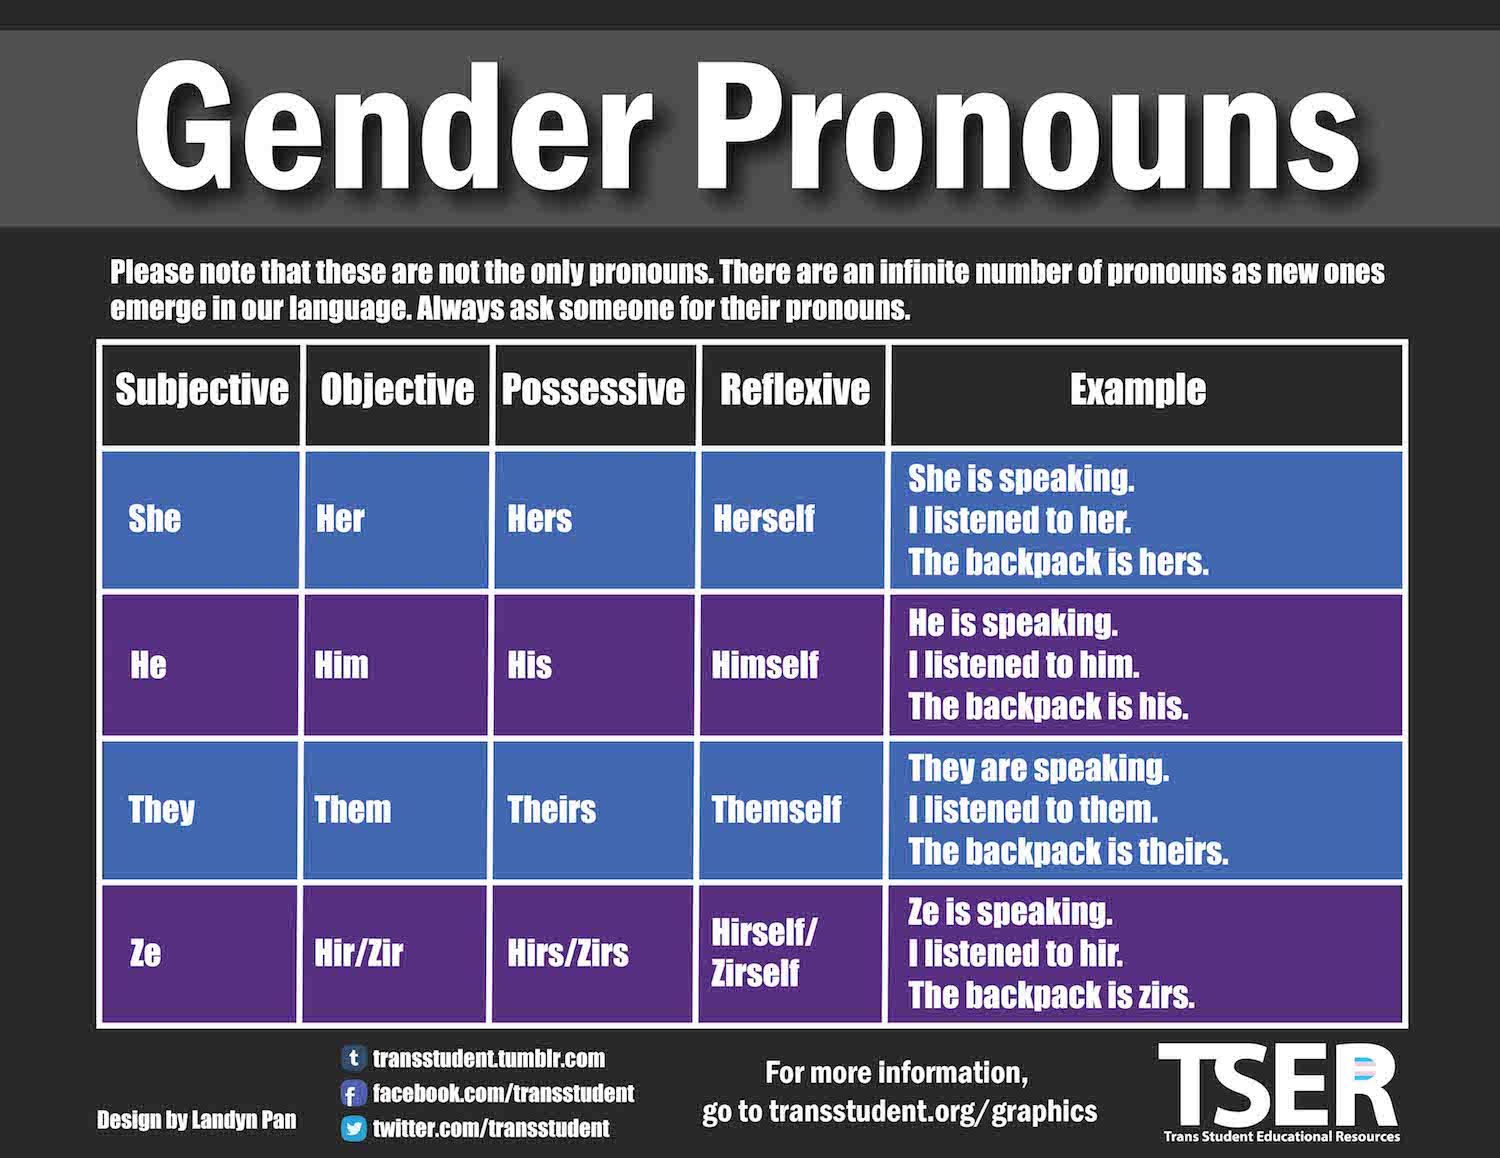 Gender pronoun chart